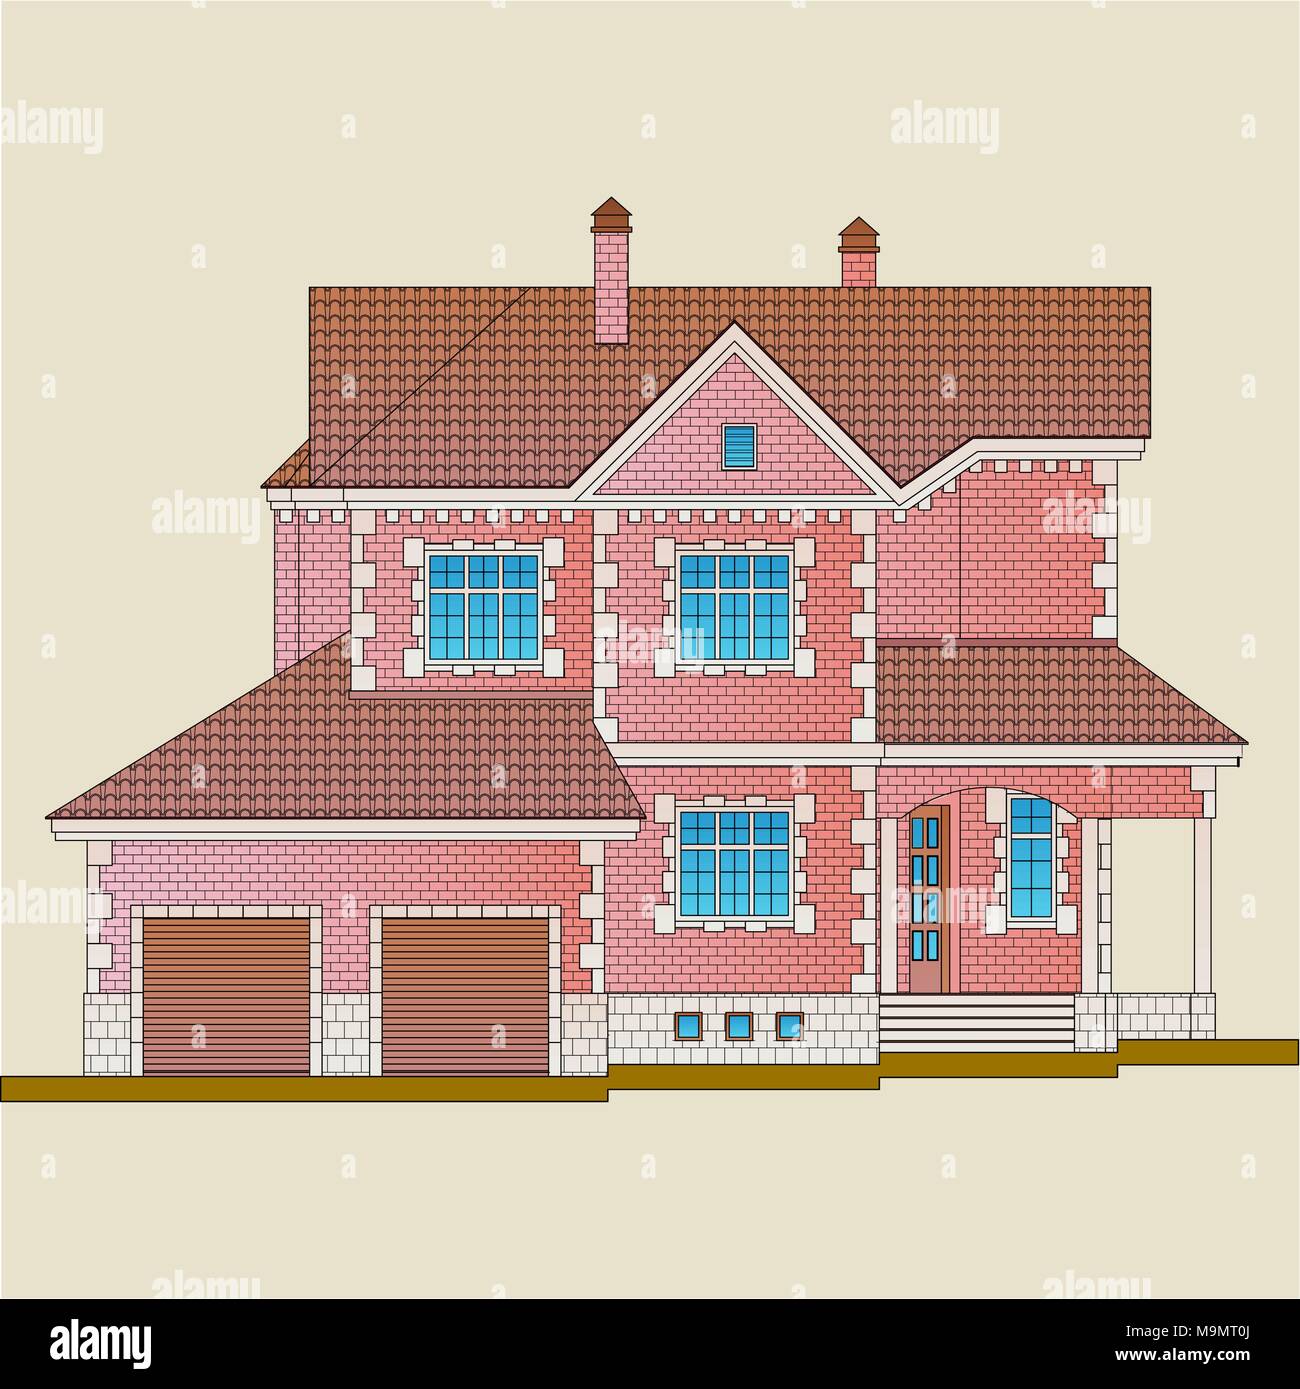 La casa è costruita di mattoni rossi e i dettagli della decorazione con pietra bianca. Lo stile classico dell'architettura dell'appartamento. Illustrazione Vettoriale